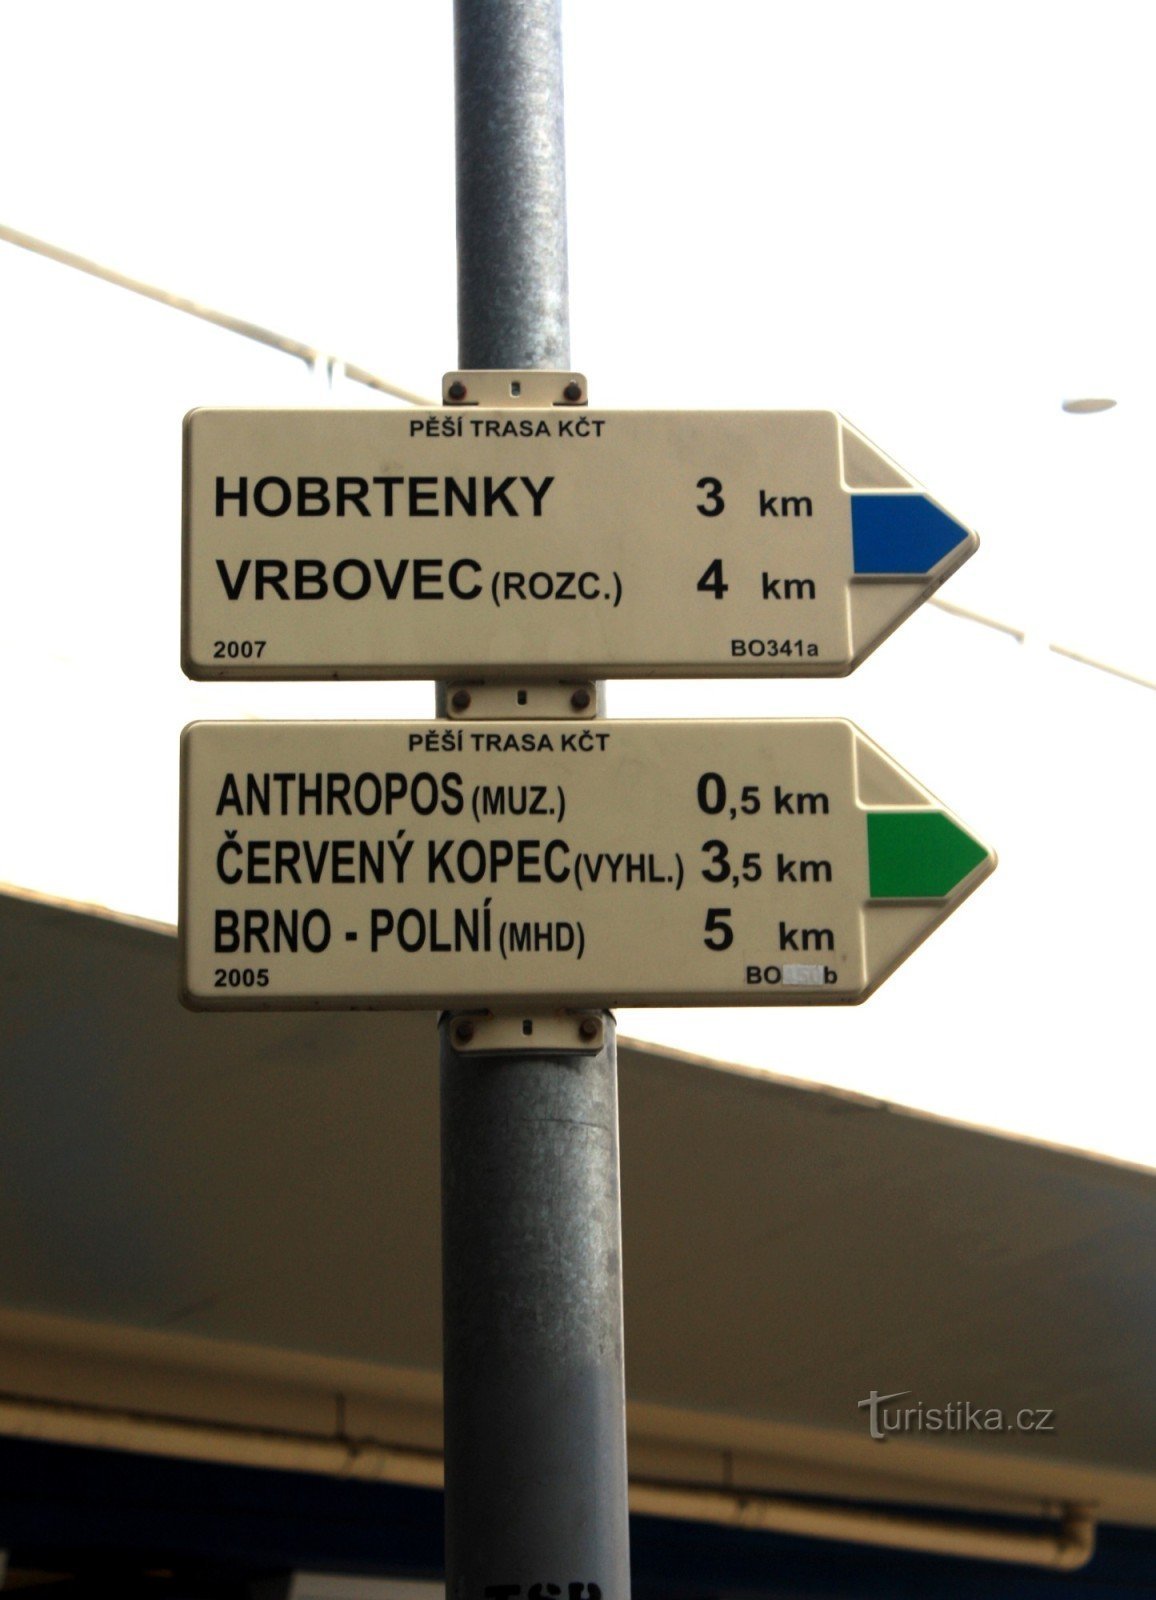 Răscruce turistică Brno-Pisárky